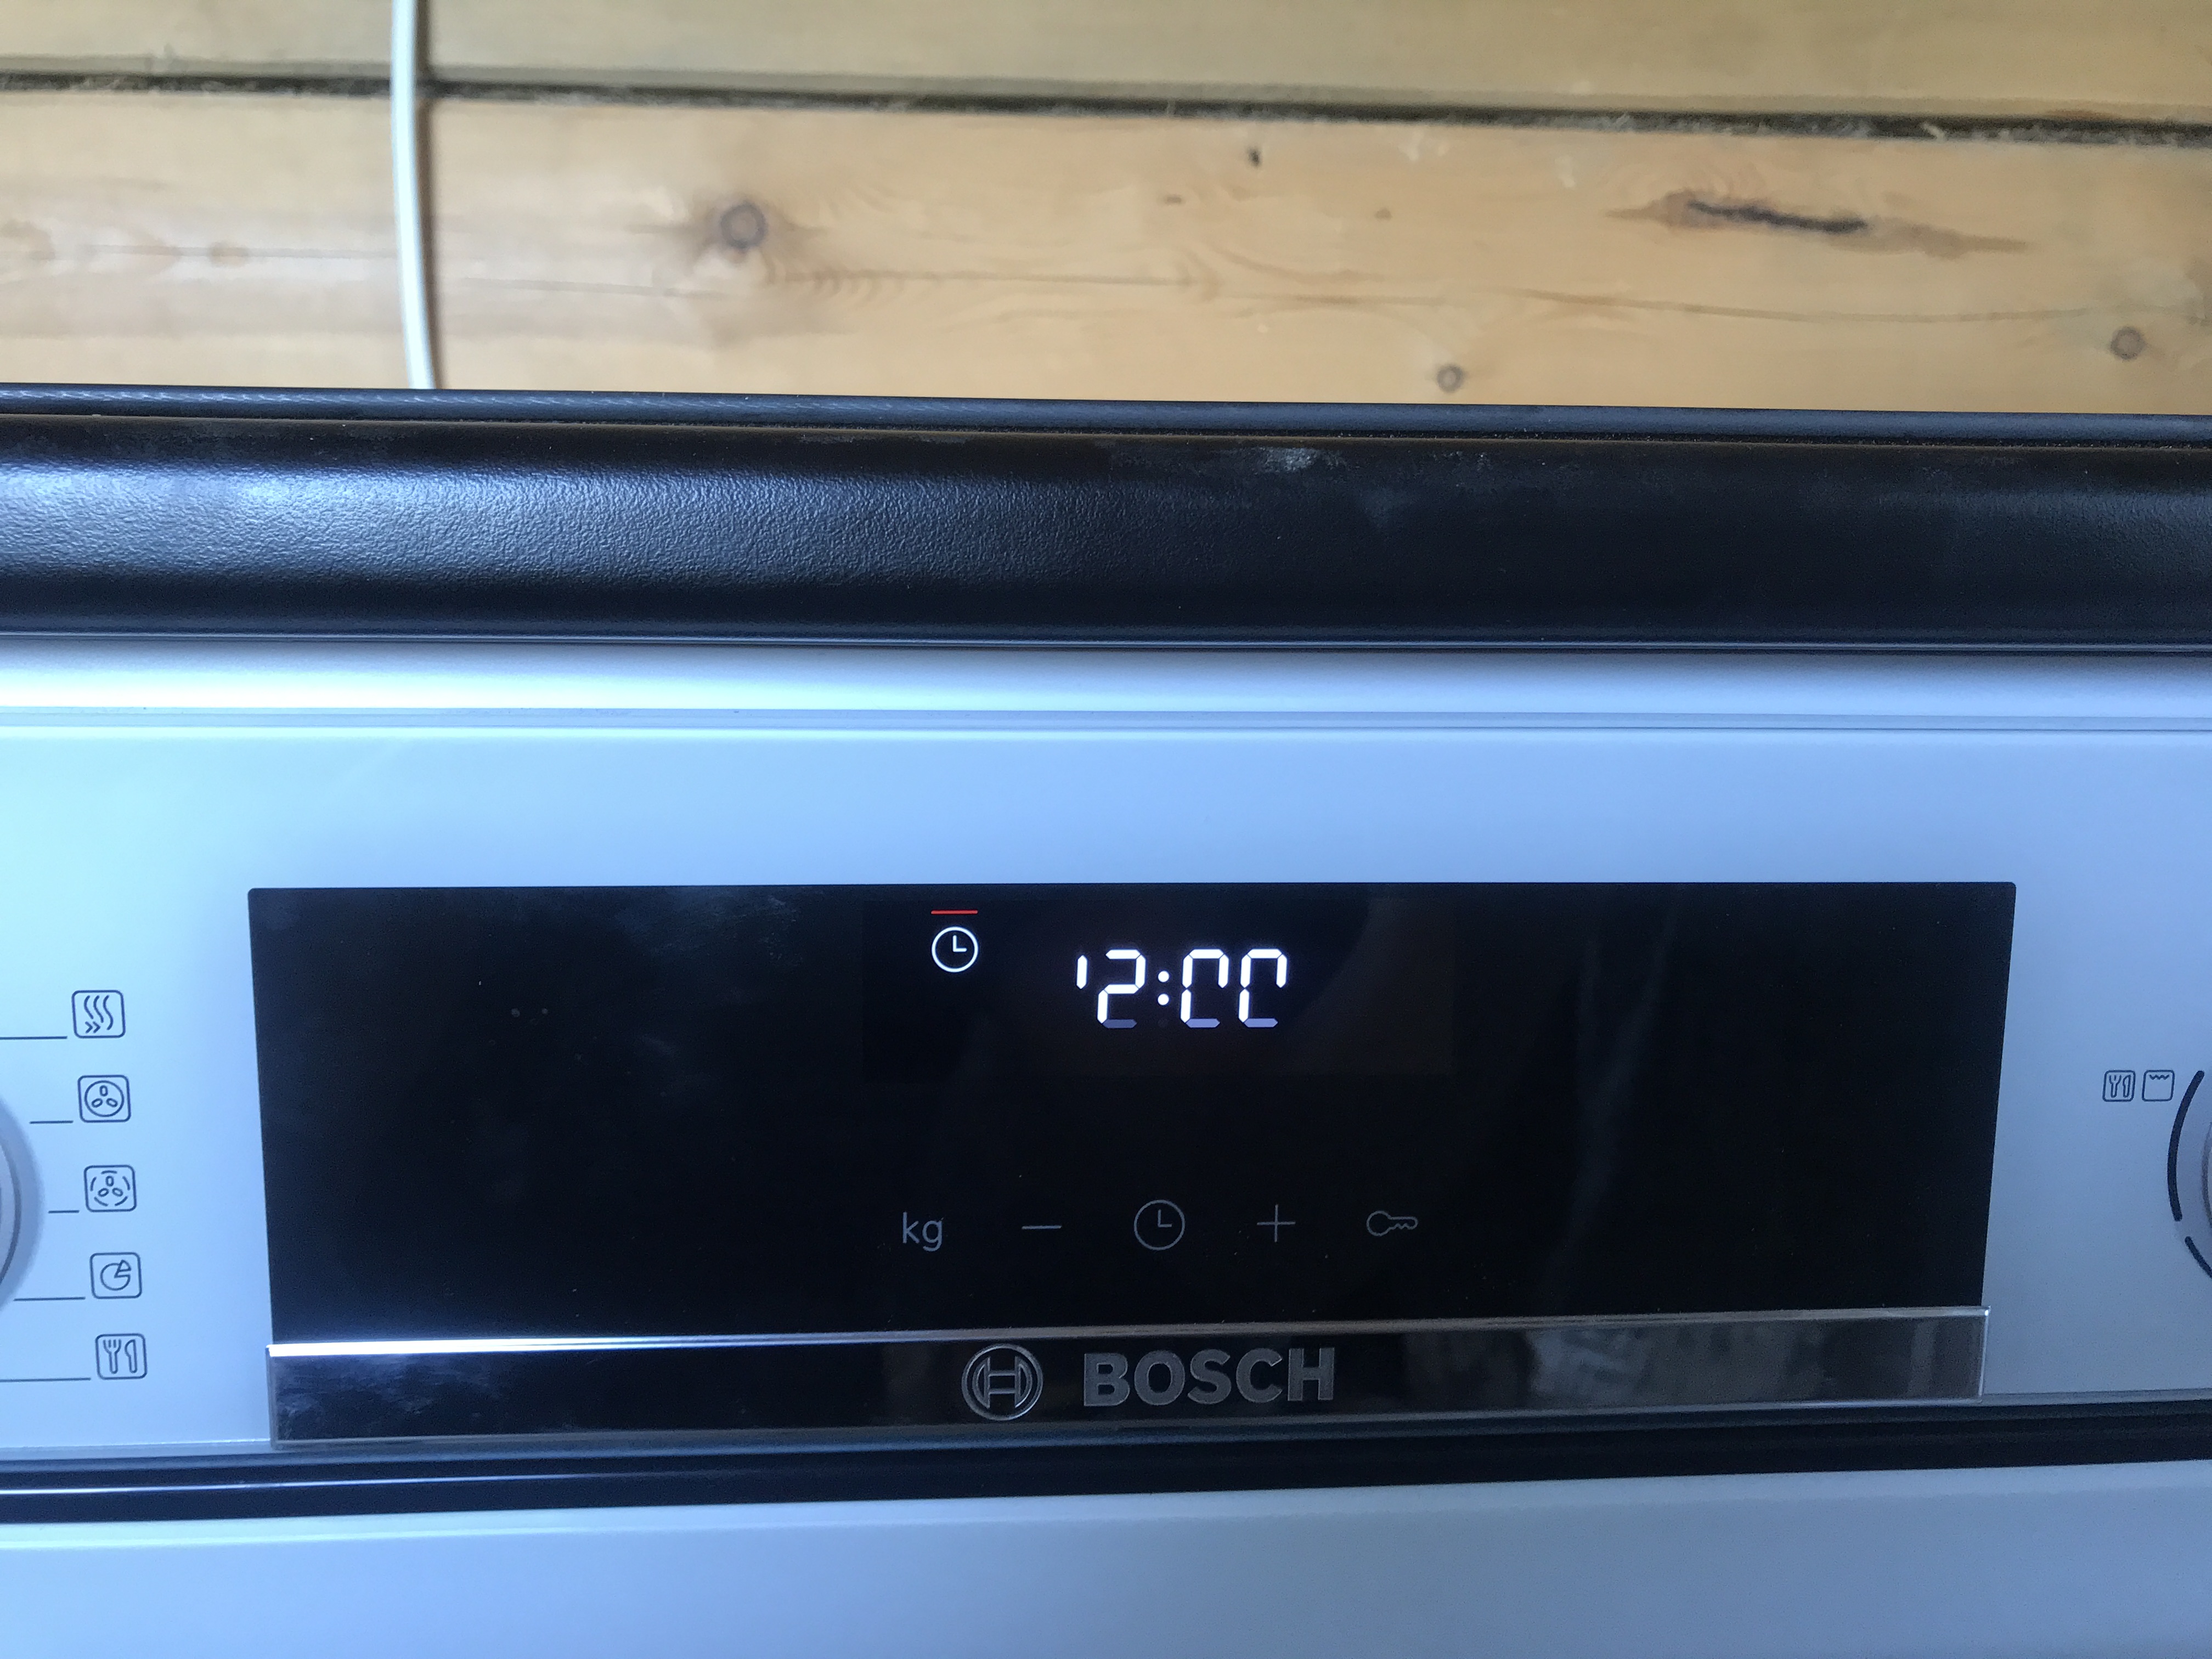 Часы духовка бош. Микроволновка бош цифры на дисплее. Духовой шкаф Bosch с 2 дисплеями. Дисплей управления духовки. Духовка бош с дисплеем.